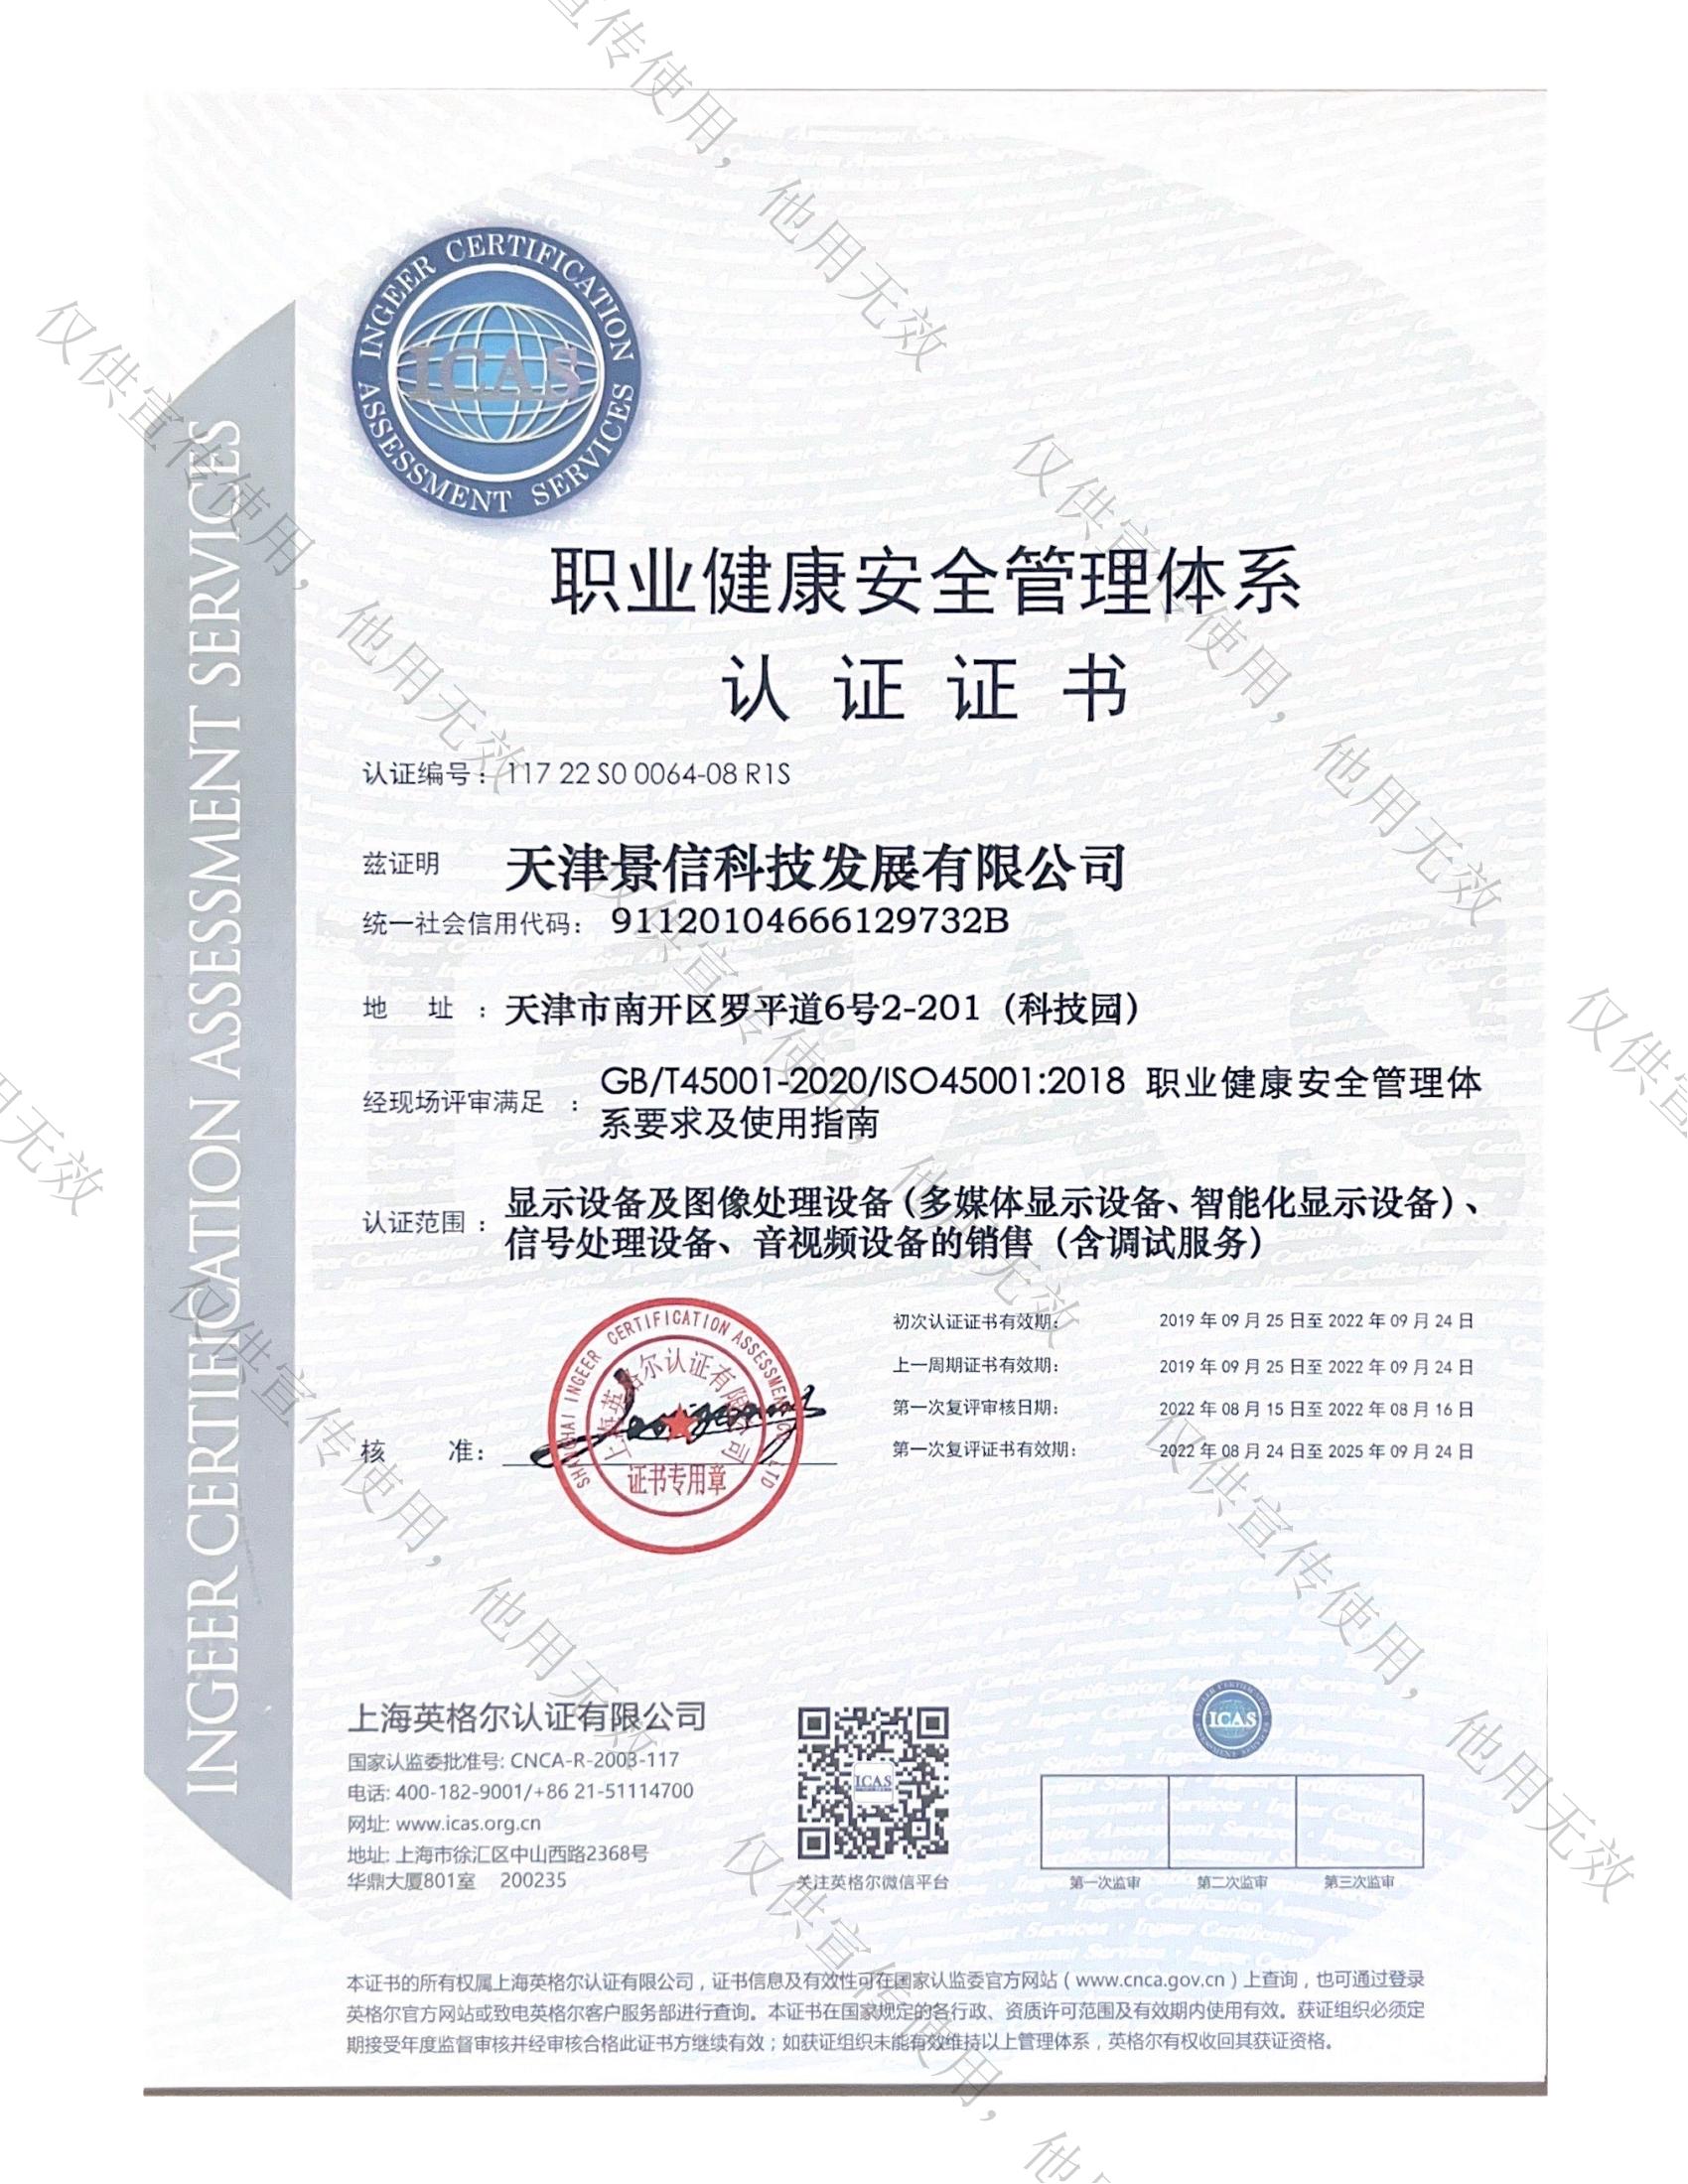 45001 管理体系认证证书